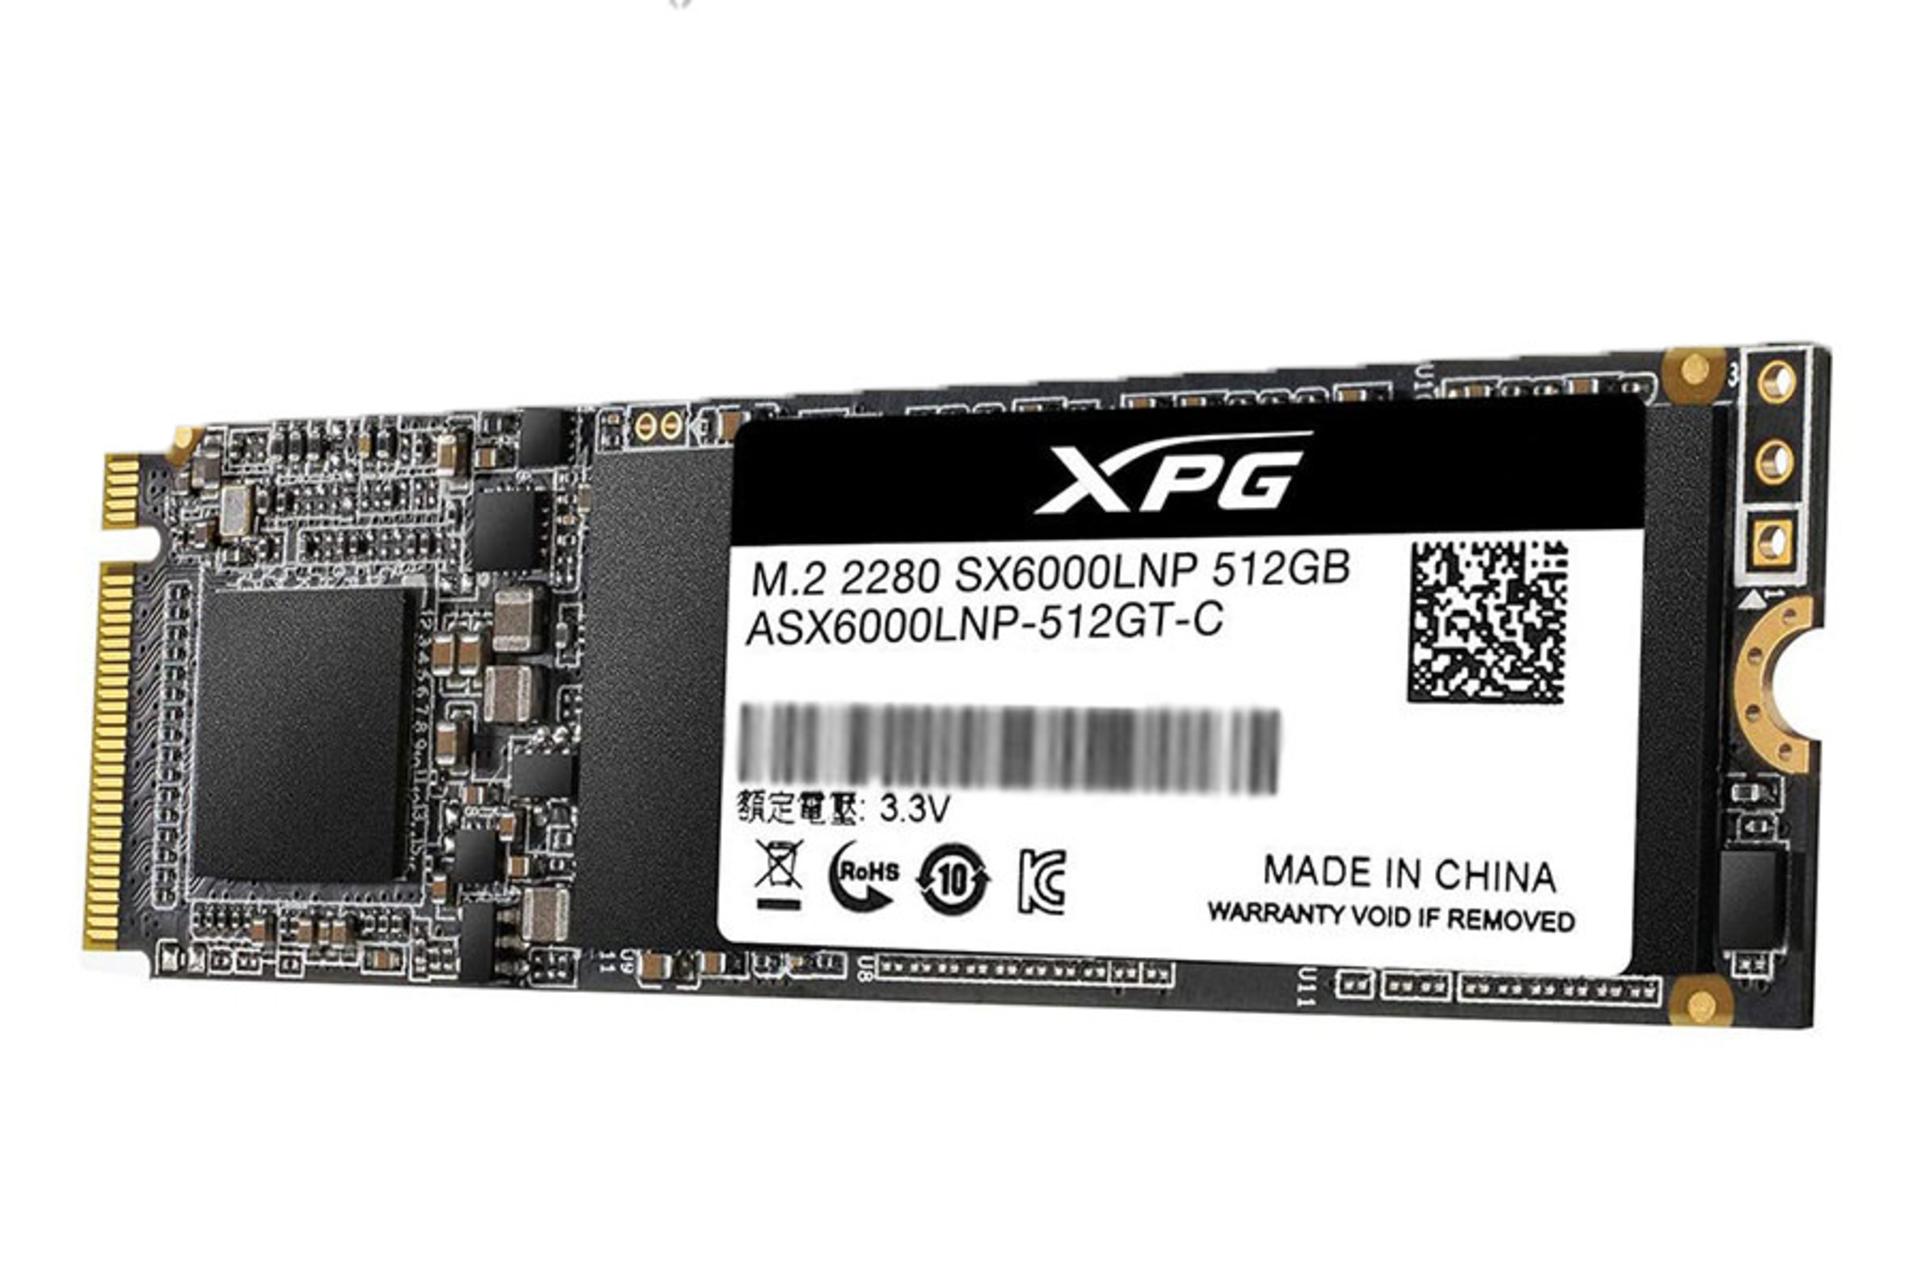 مرجع متخصصين ايران اي ديتا XPG SX6000 Lite PCIe M.2 ظرفيت 512 گيگابايت / ADATA XPG SX6000 Lite PCIe M.2 512GB